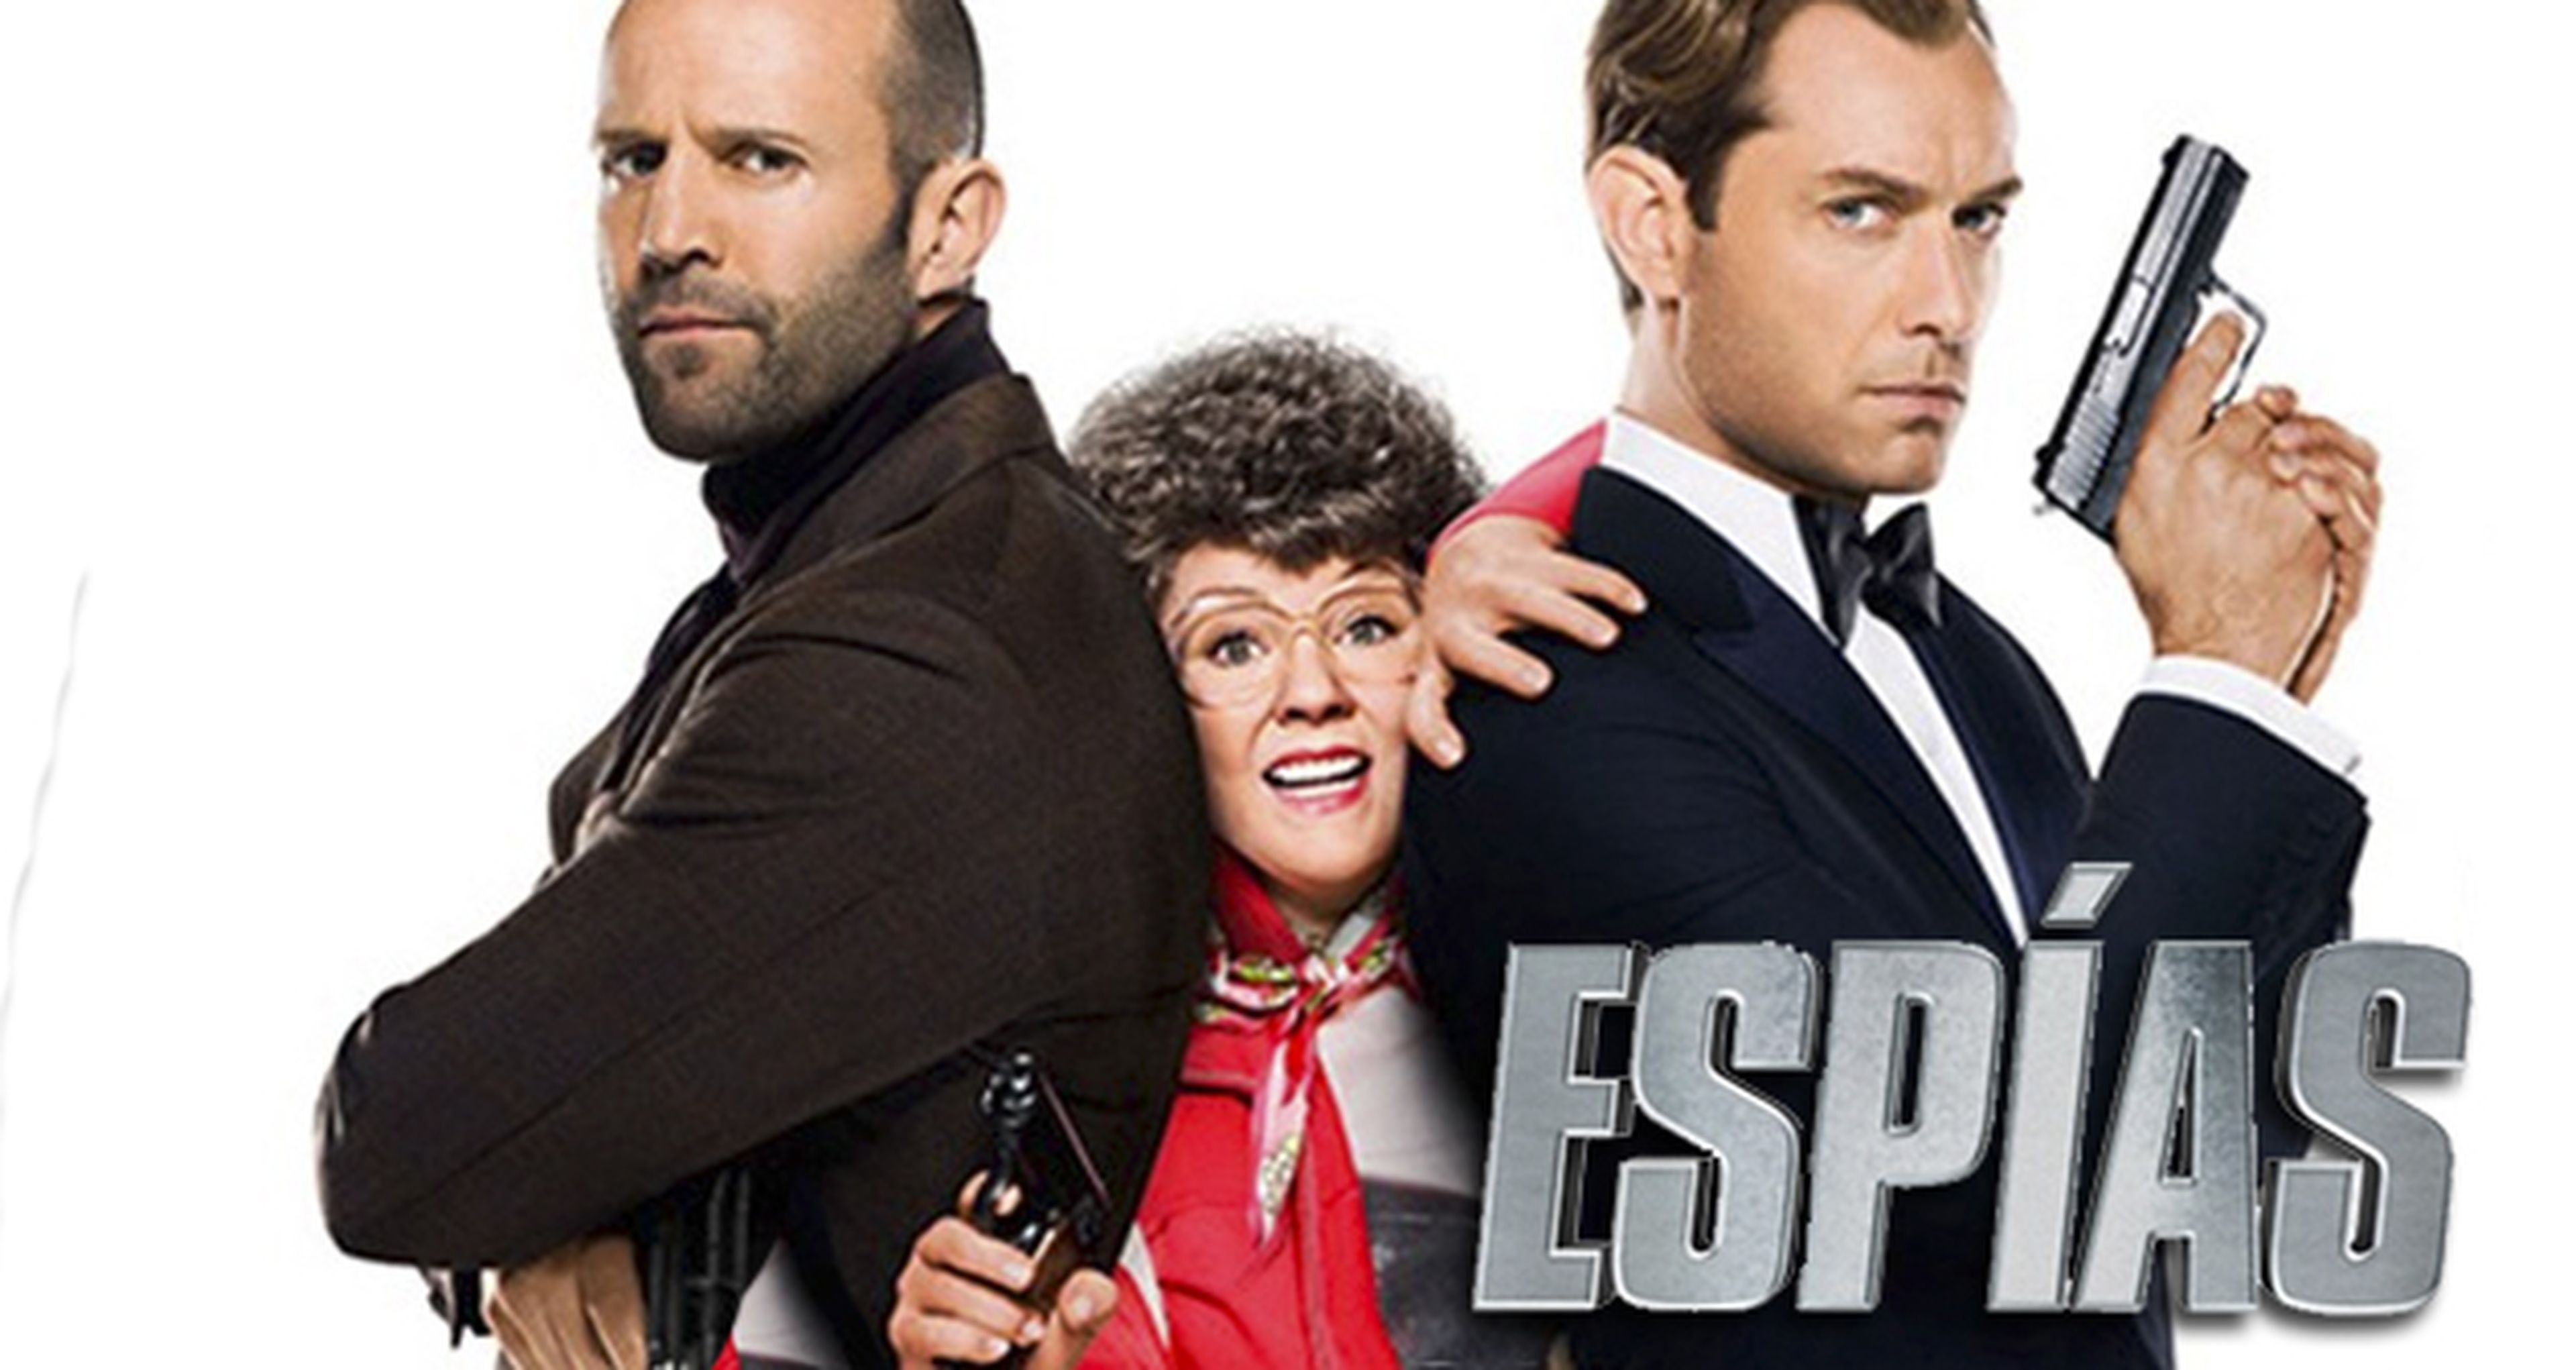 Crítica de Espías, comedia con Statham y Jude Law